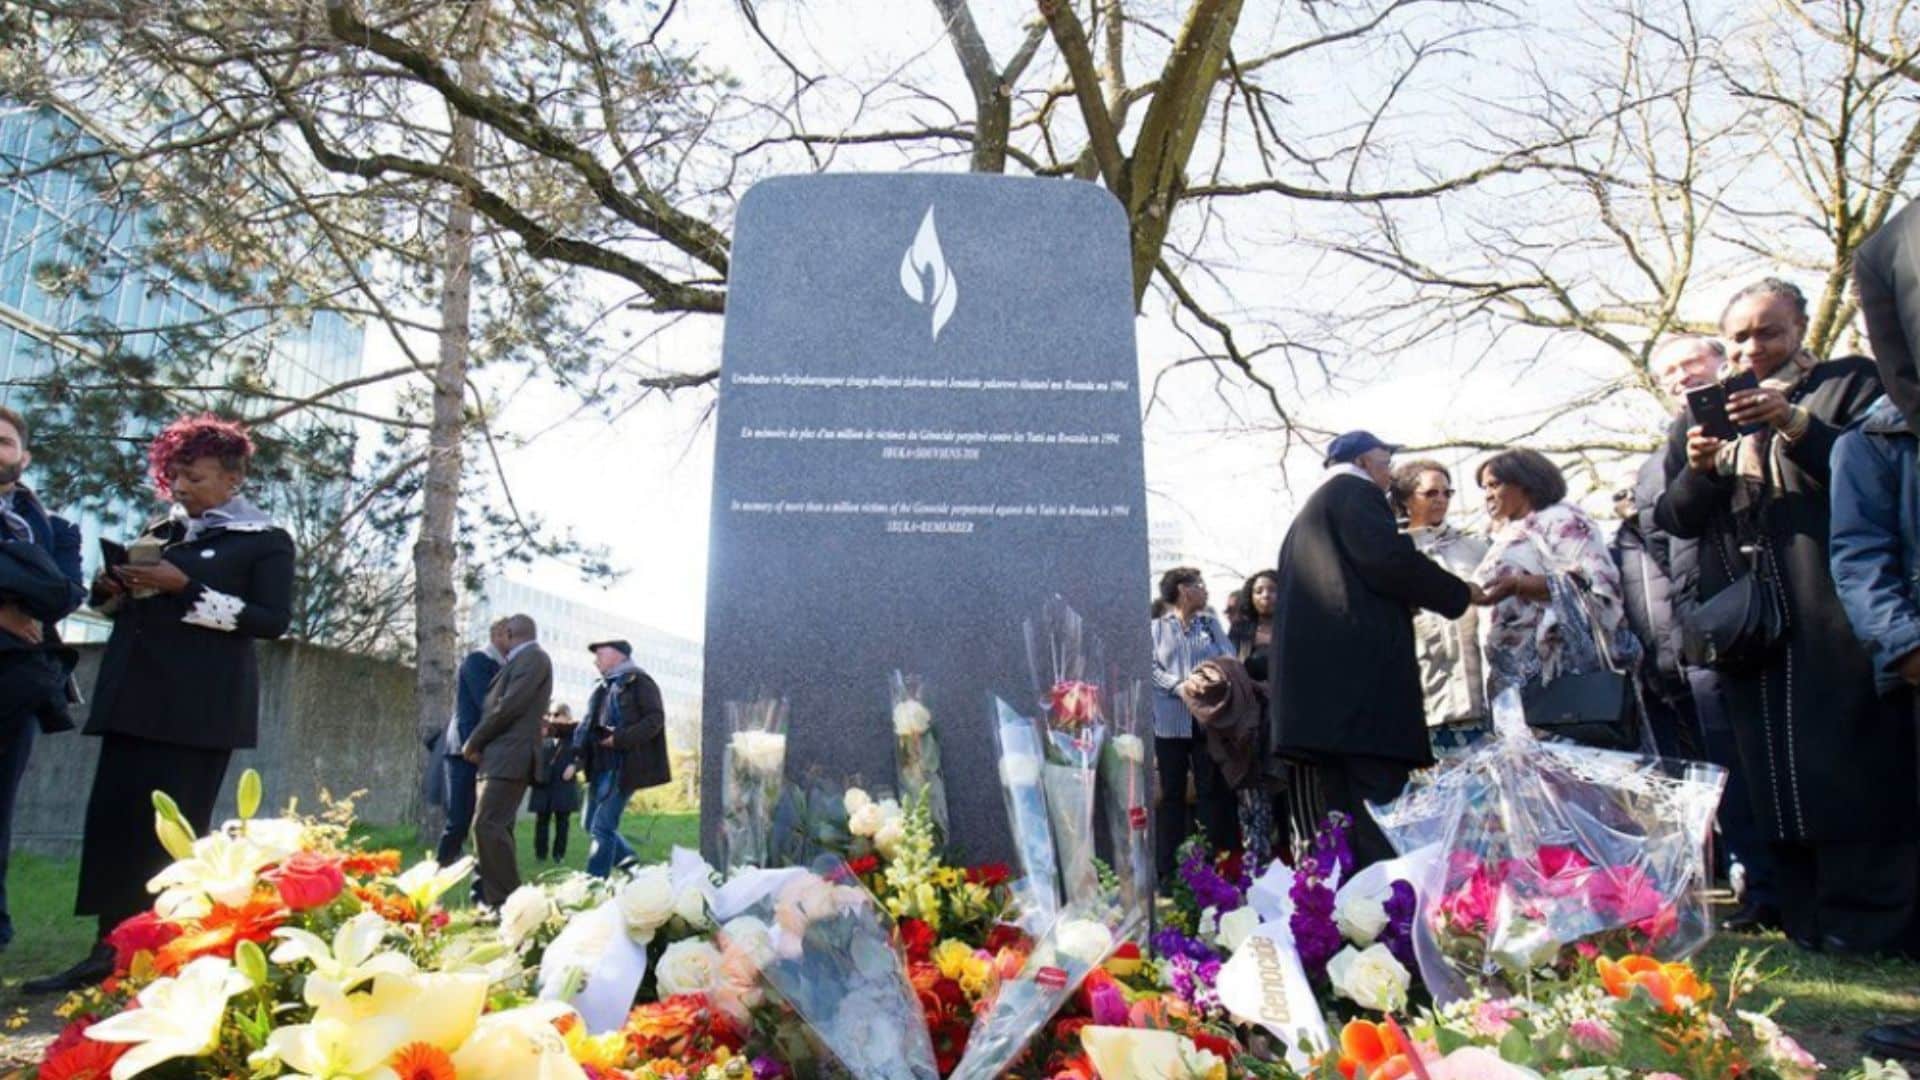 Appel ONU Commémoration Génocide Rwanda